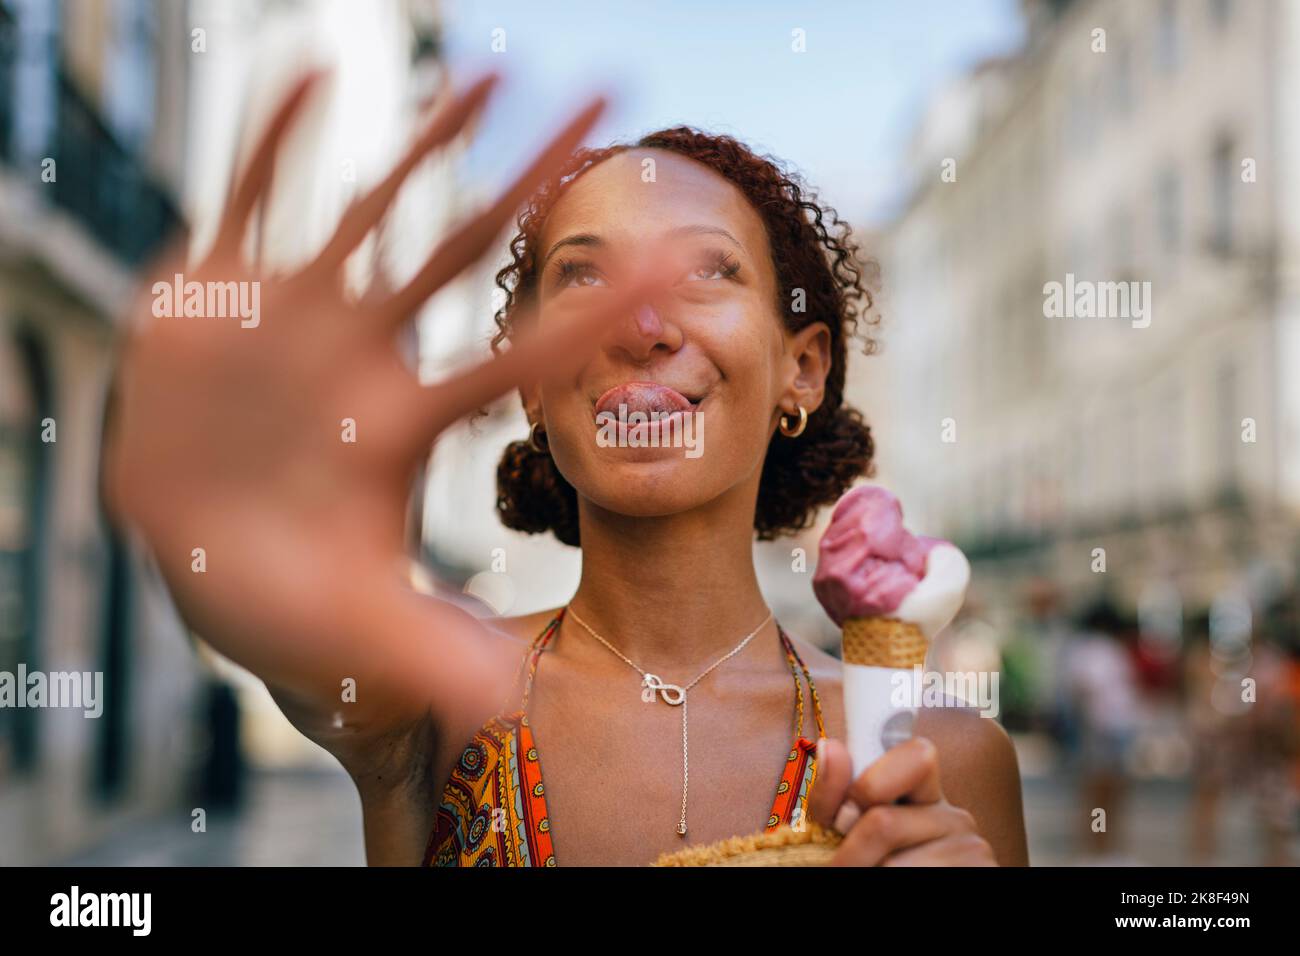 Junge Frau hält Eis gestikuliert Stop-Zeichen Stockfoto